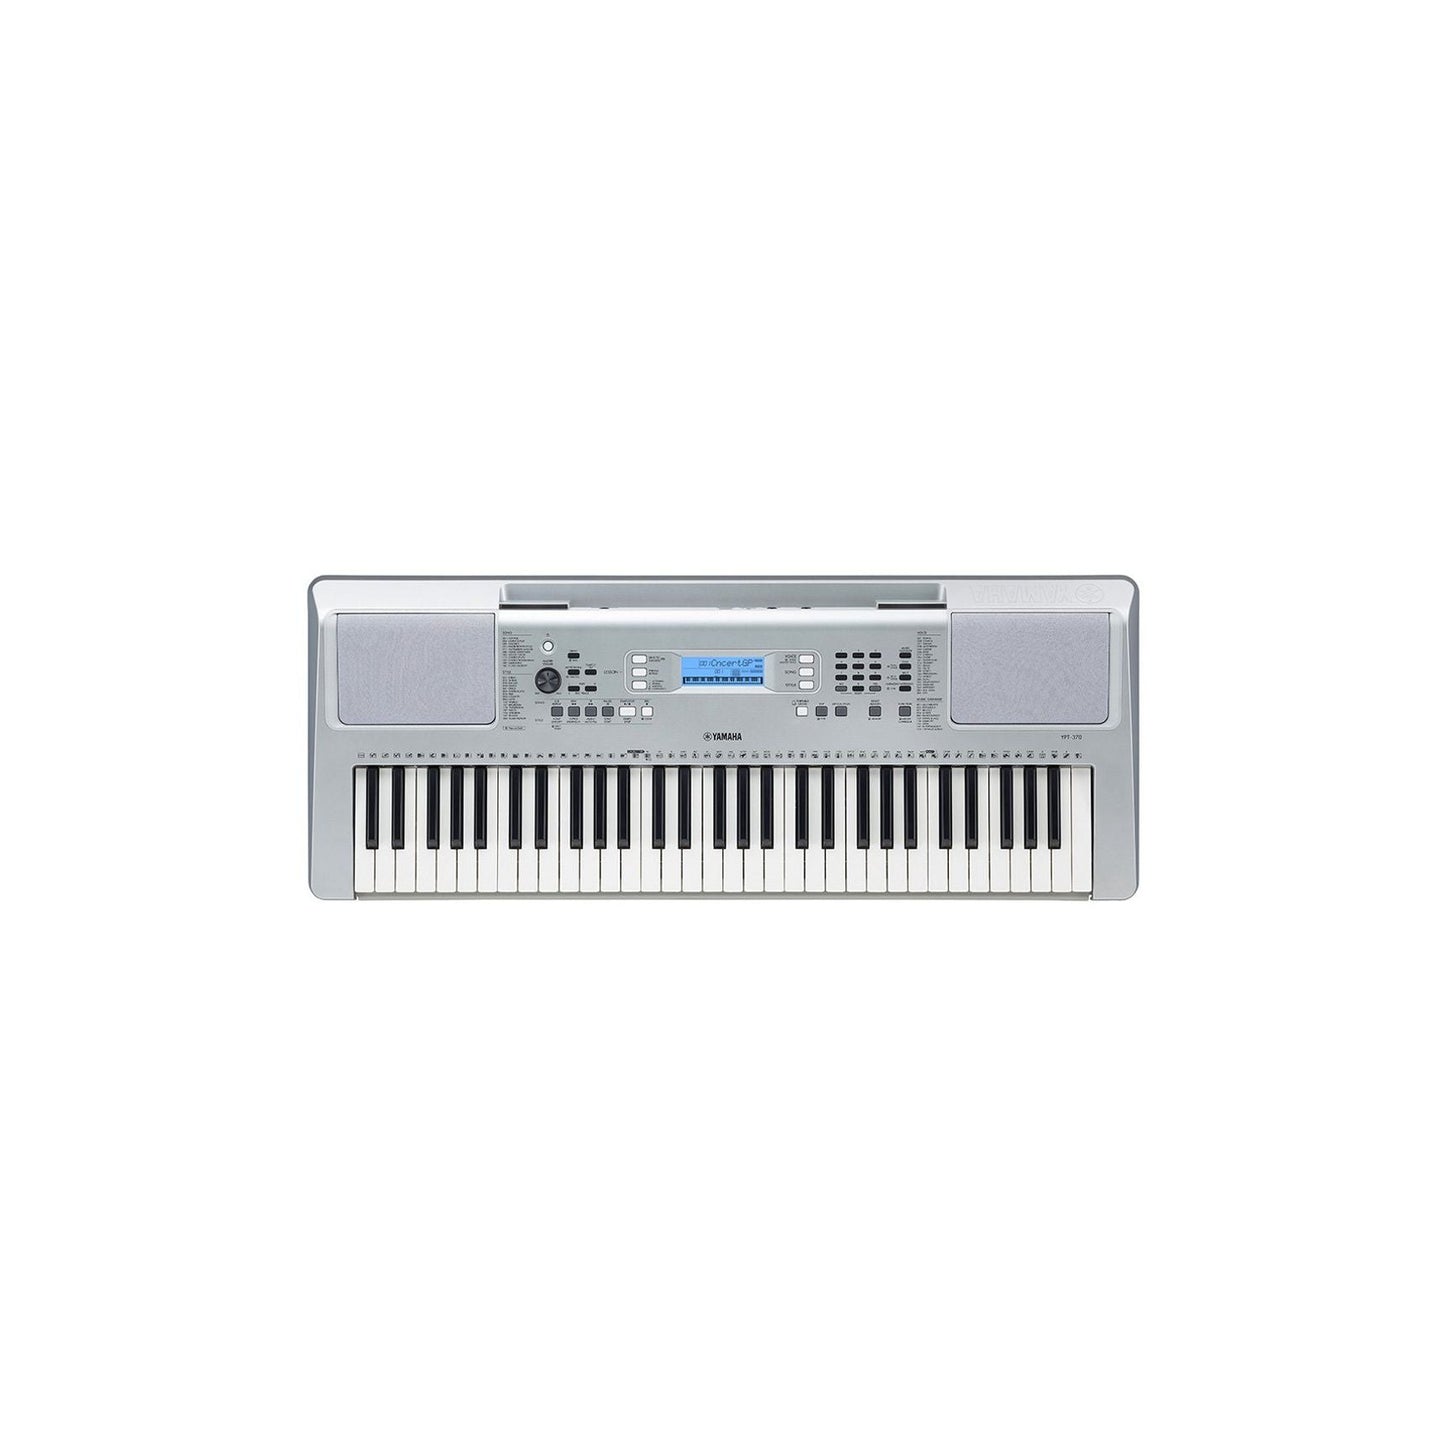 YAMAHA YPT-370 Portable Keyboard